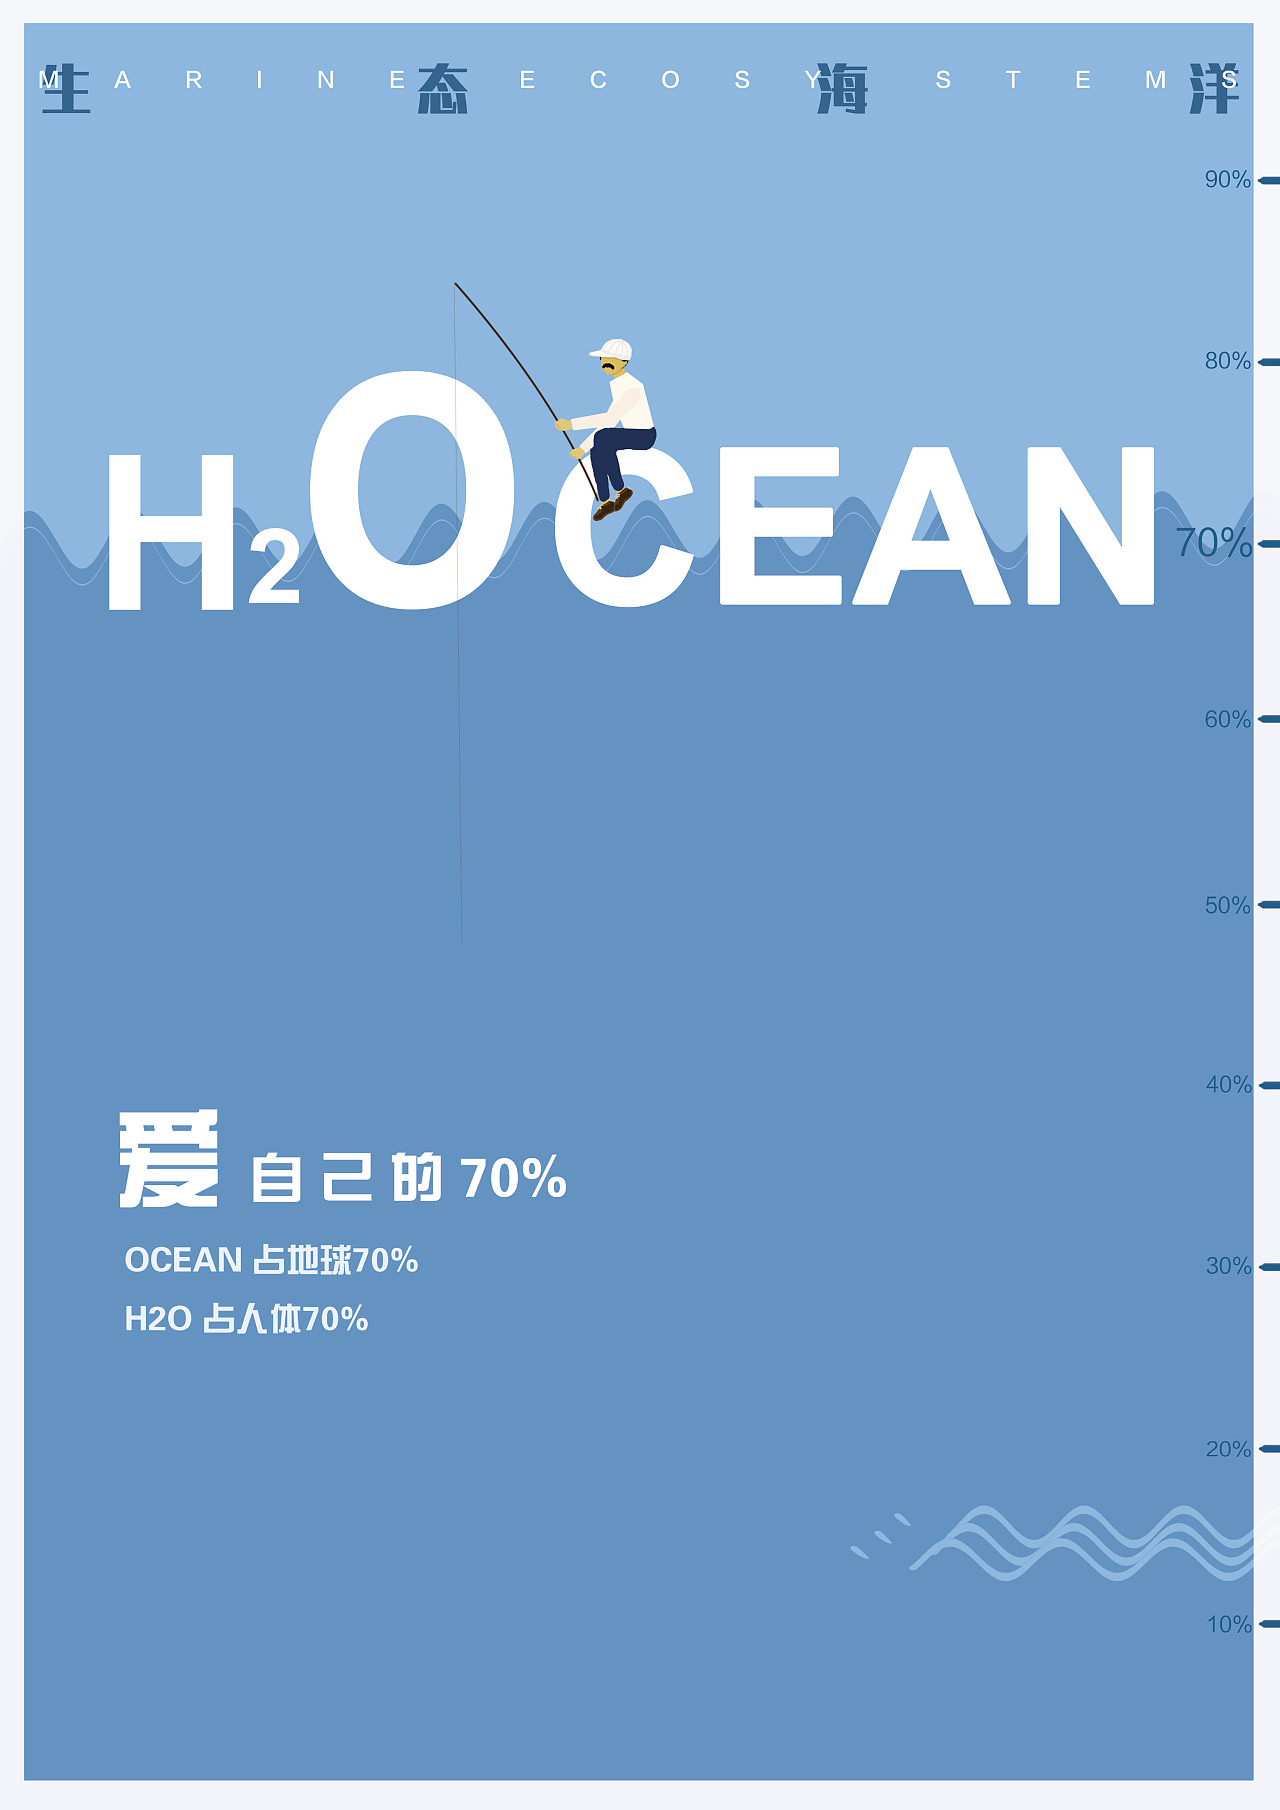 海洋大赛海报设计图片